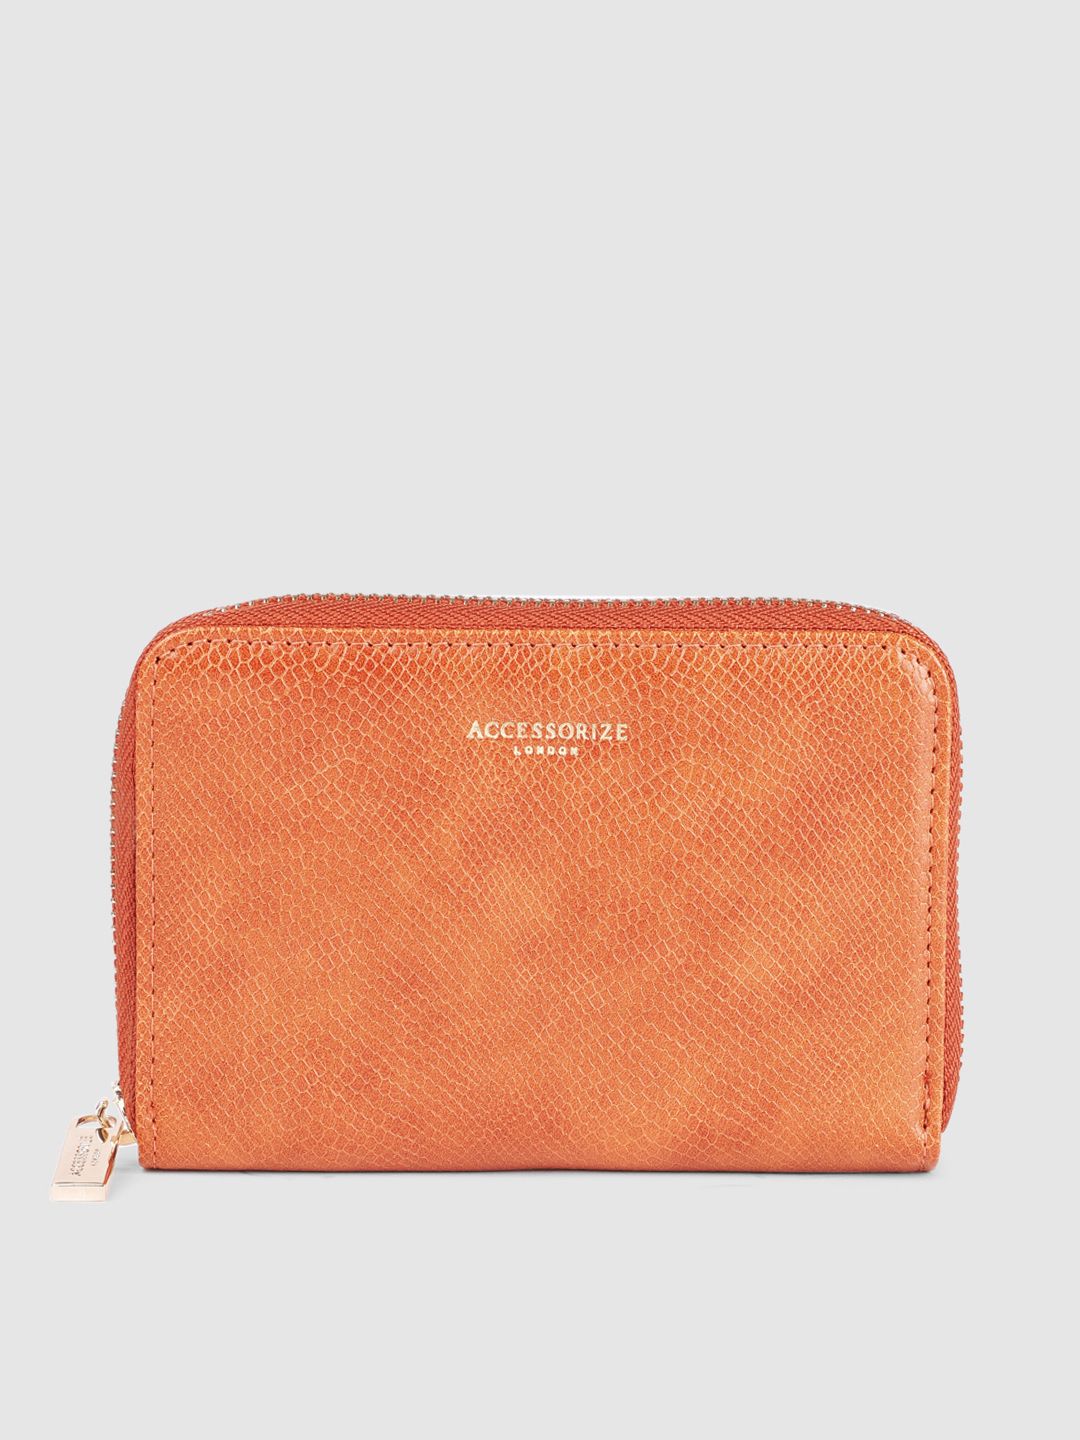 Accessorize Women Orange Textured Zip Around Wallet Price in India